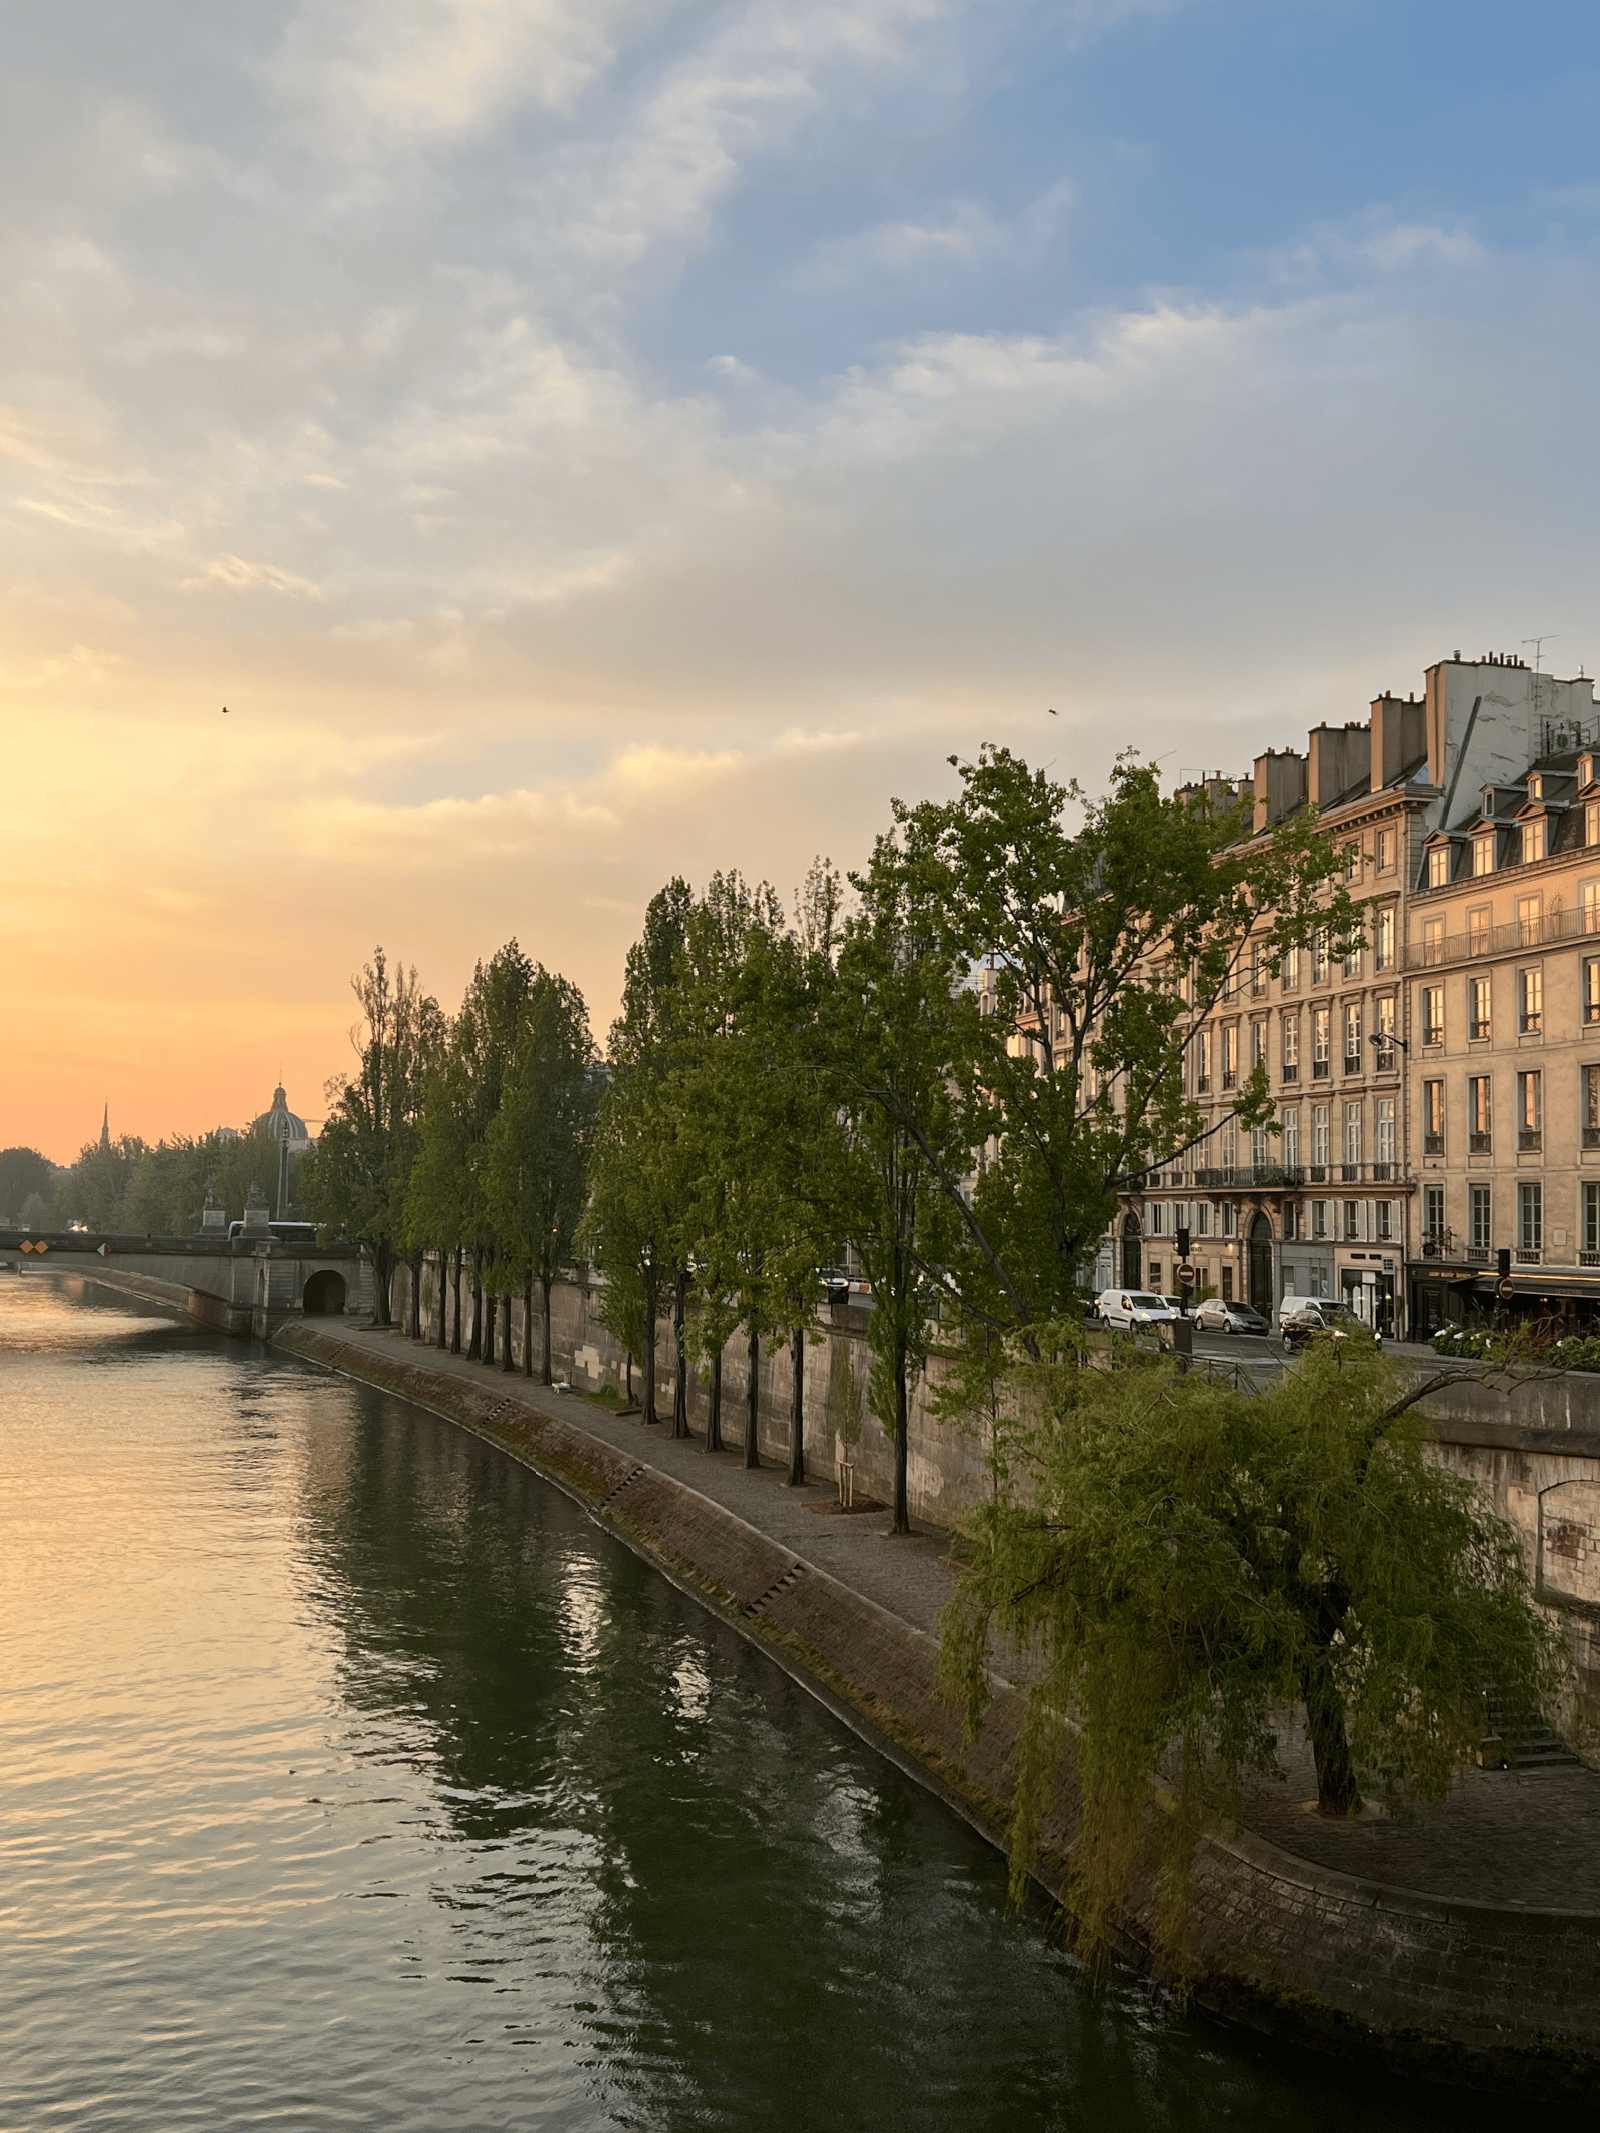 How to Do Paris Like a Local